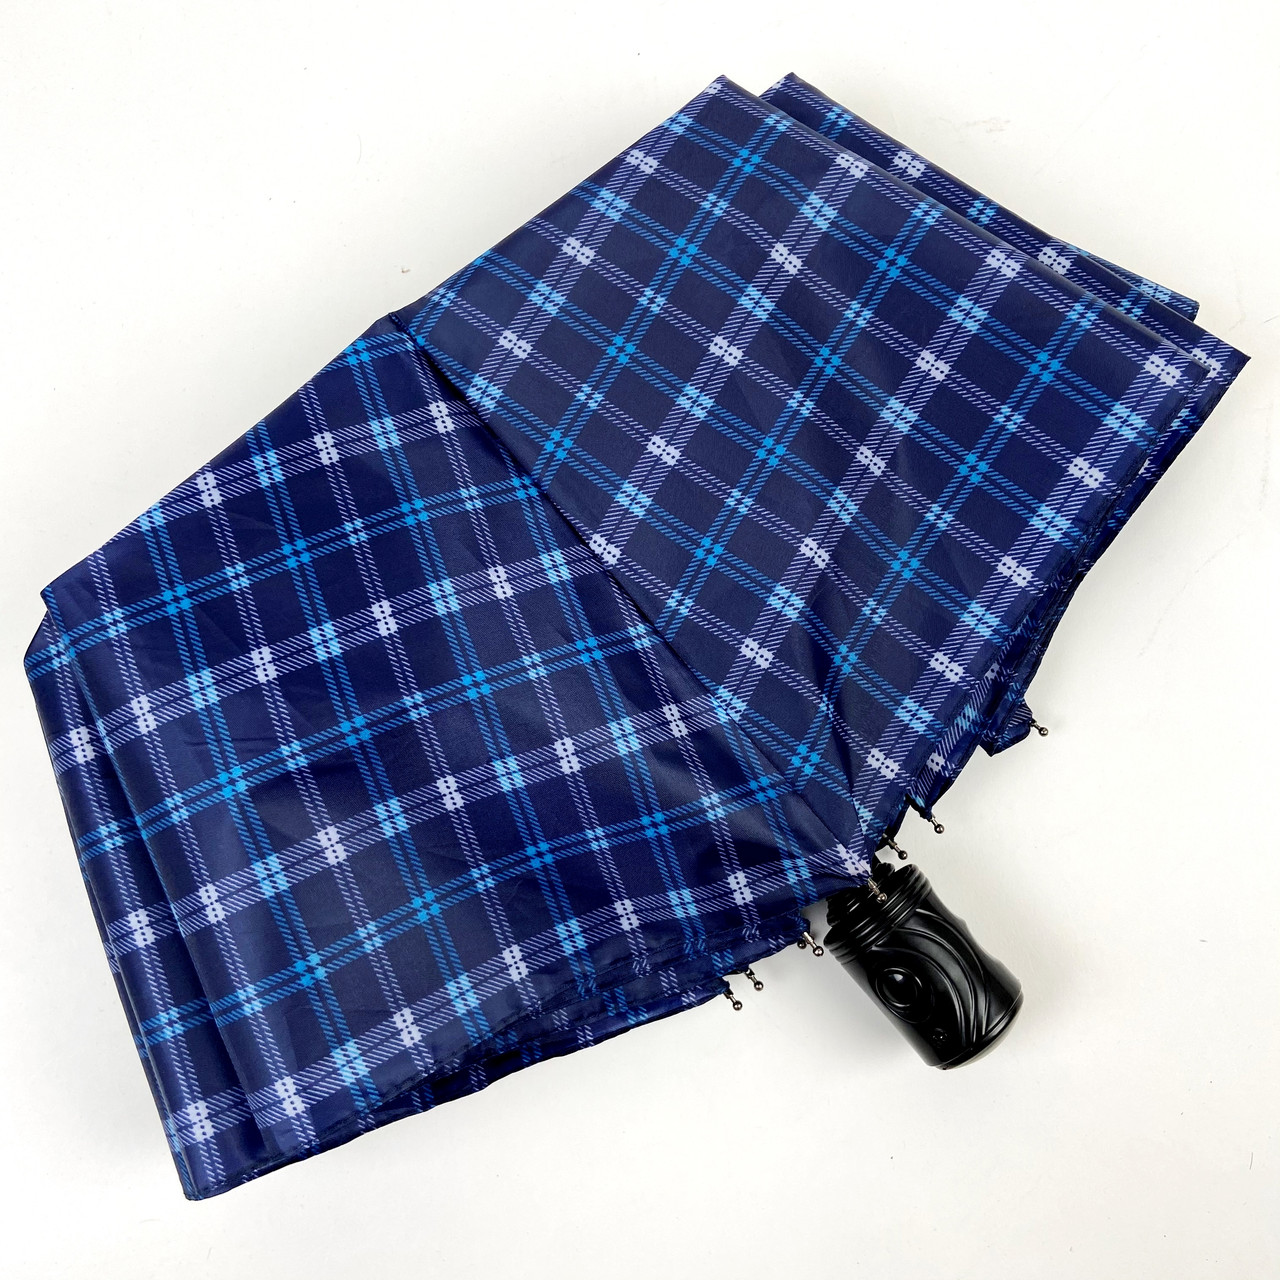 Жіноча складана парасолька напівавтомат S&L 98 см синя - фото 3